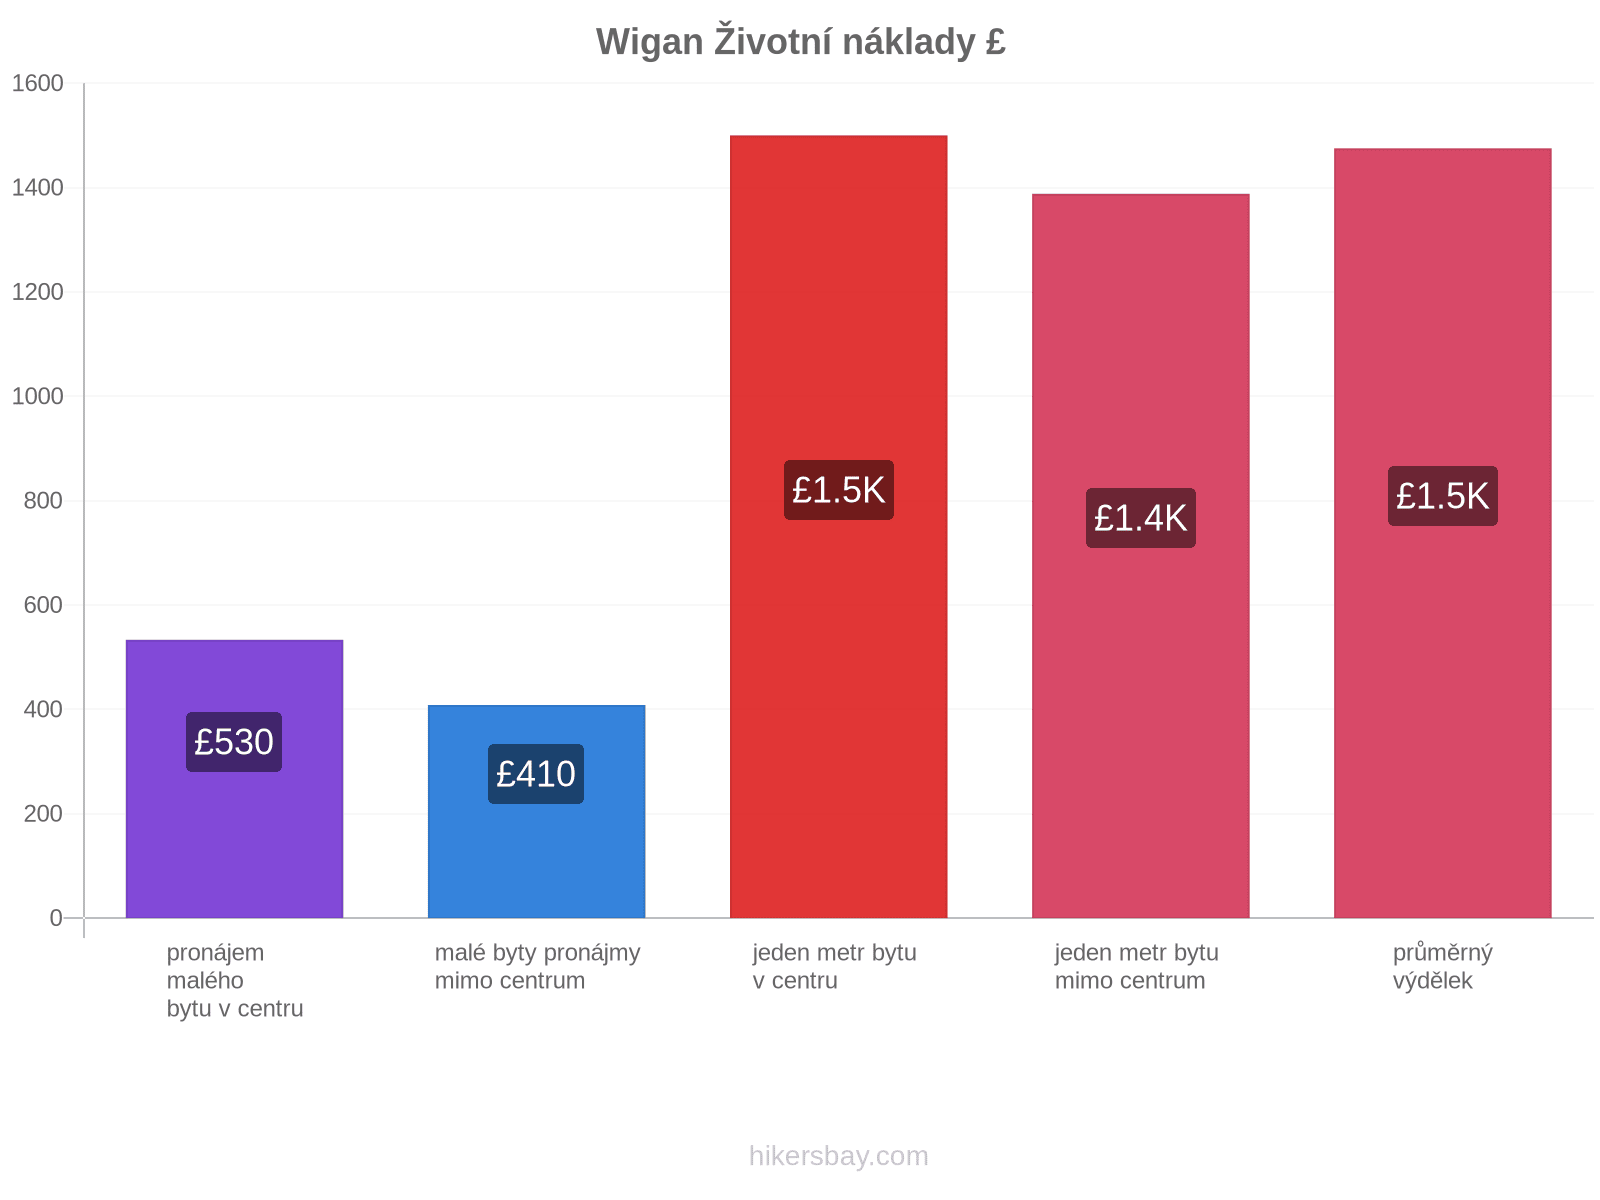 Wigan životní náklady hikersbay.com